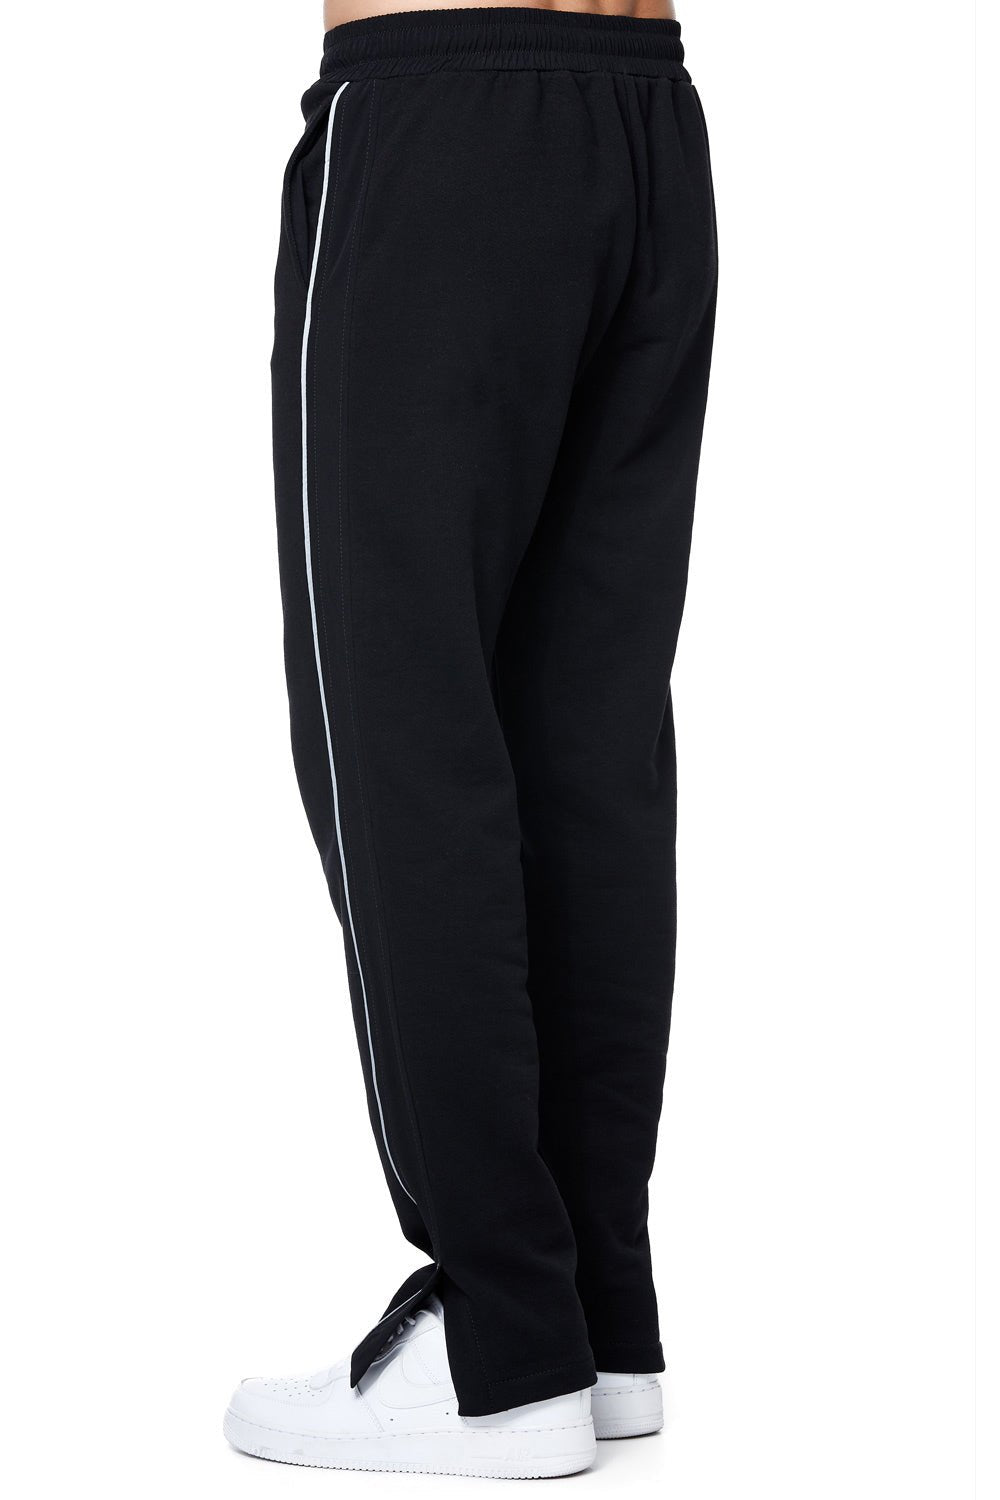 Pantaloni Split pentru bărbați | Bumbac jersey diagonal | Talie reglabilă | Negru | Atelier Hamza